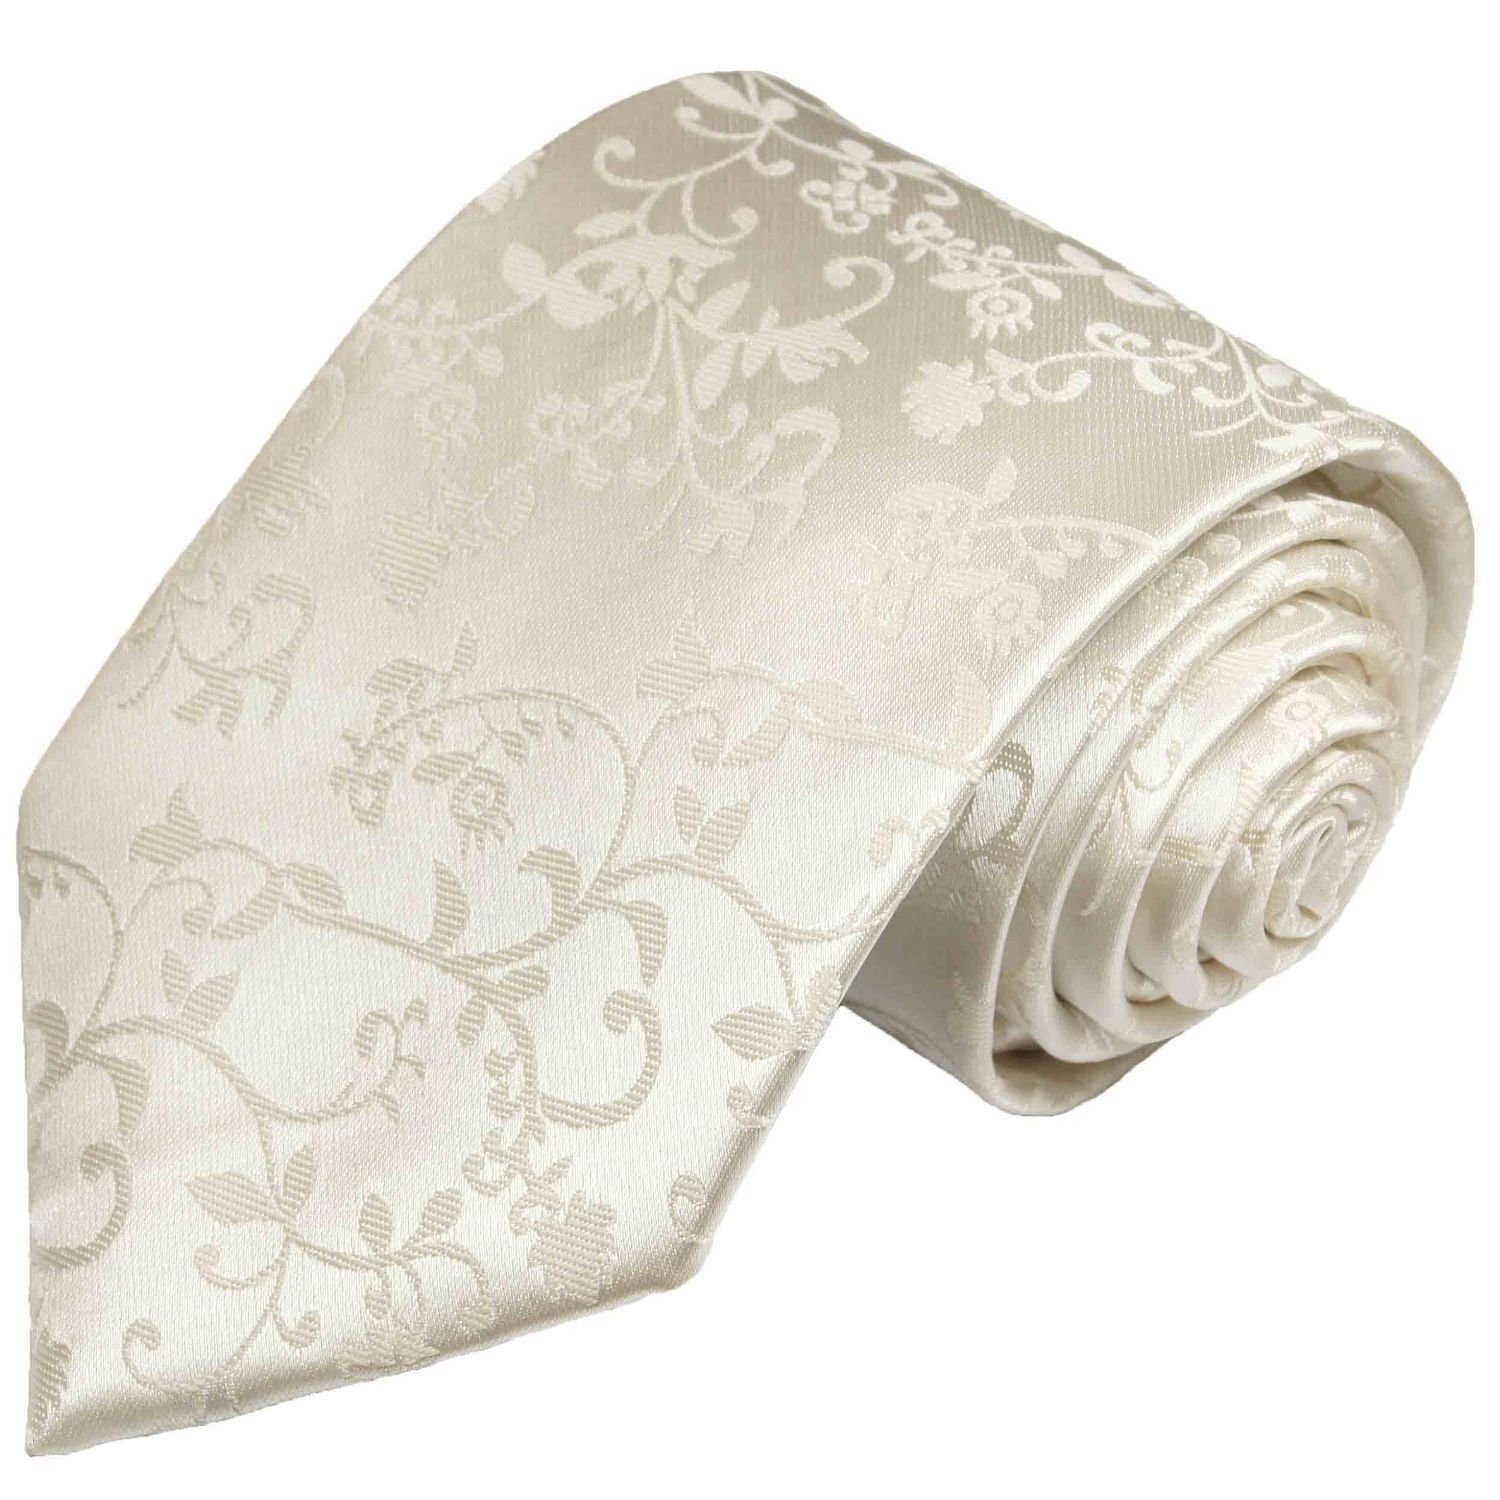 Paul Malone Krawatte »Herren Hochzeitskrawatte floral 100% Seide Bräutigam  Hochzeit Schlips« Schmal (6cm), ivory 930 online kaufen | OTTO